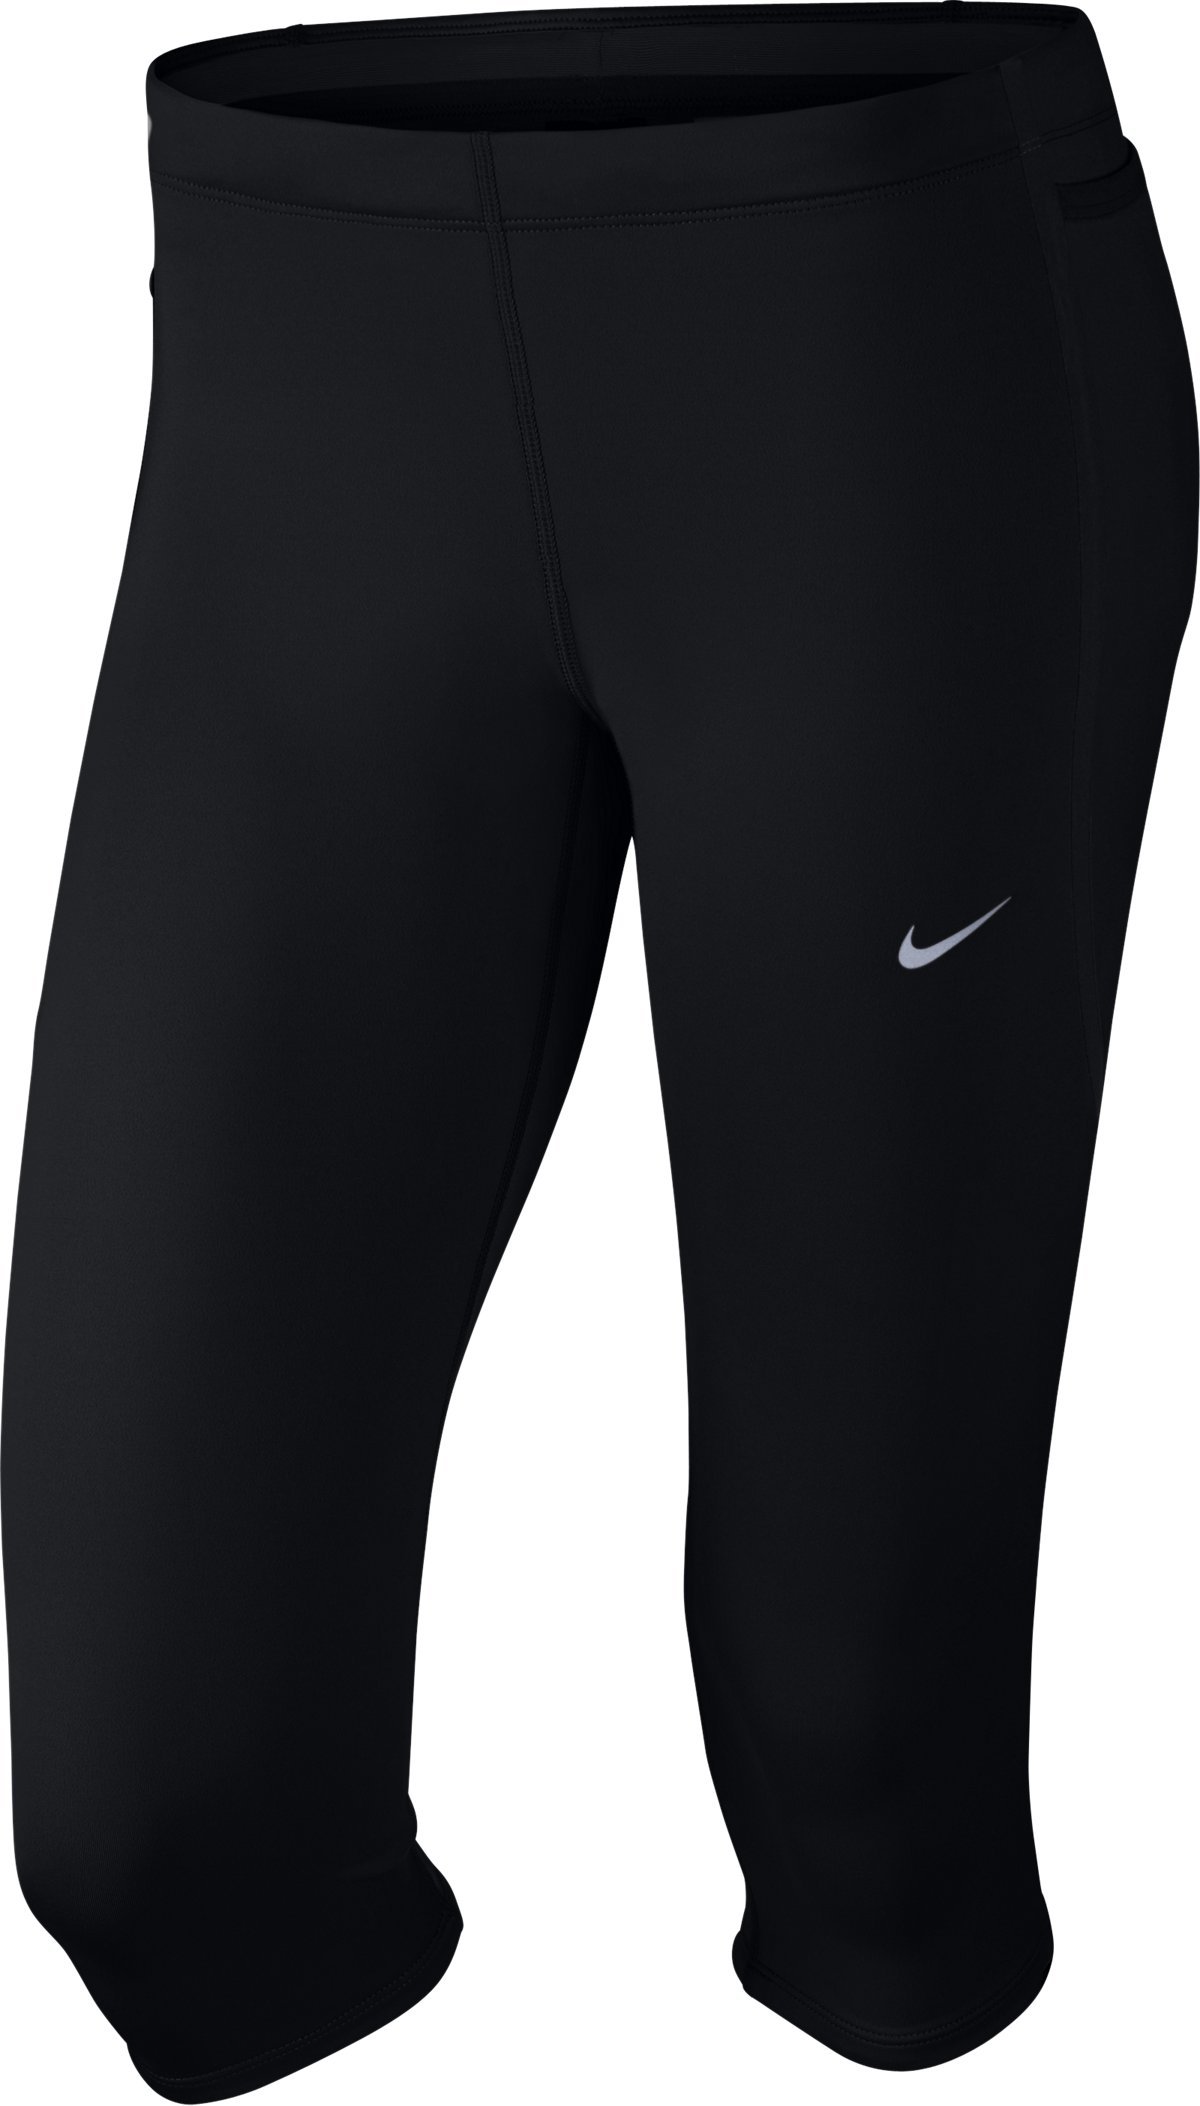 3/4 pants Nike Tech Capris